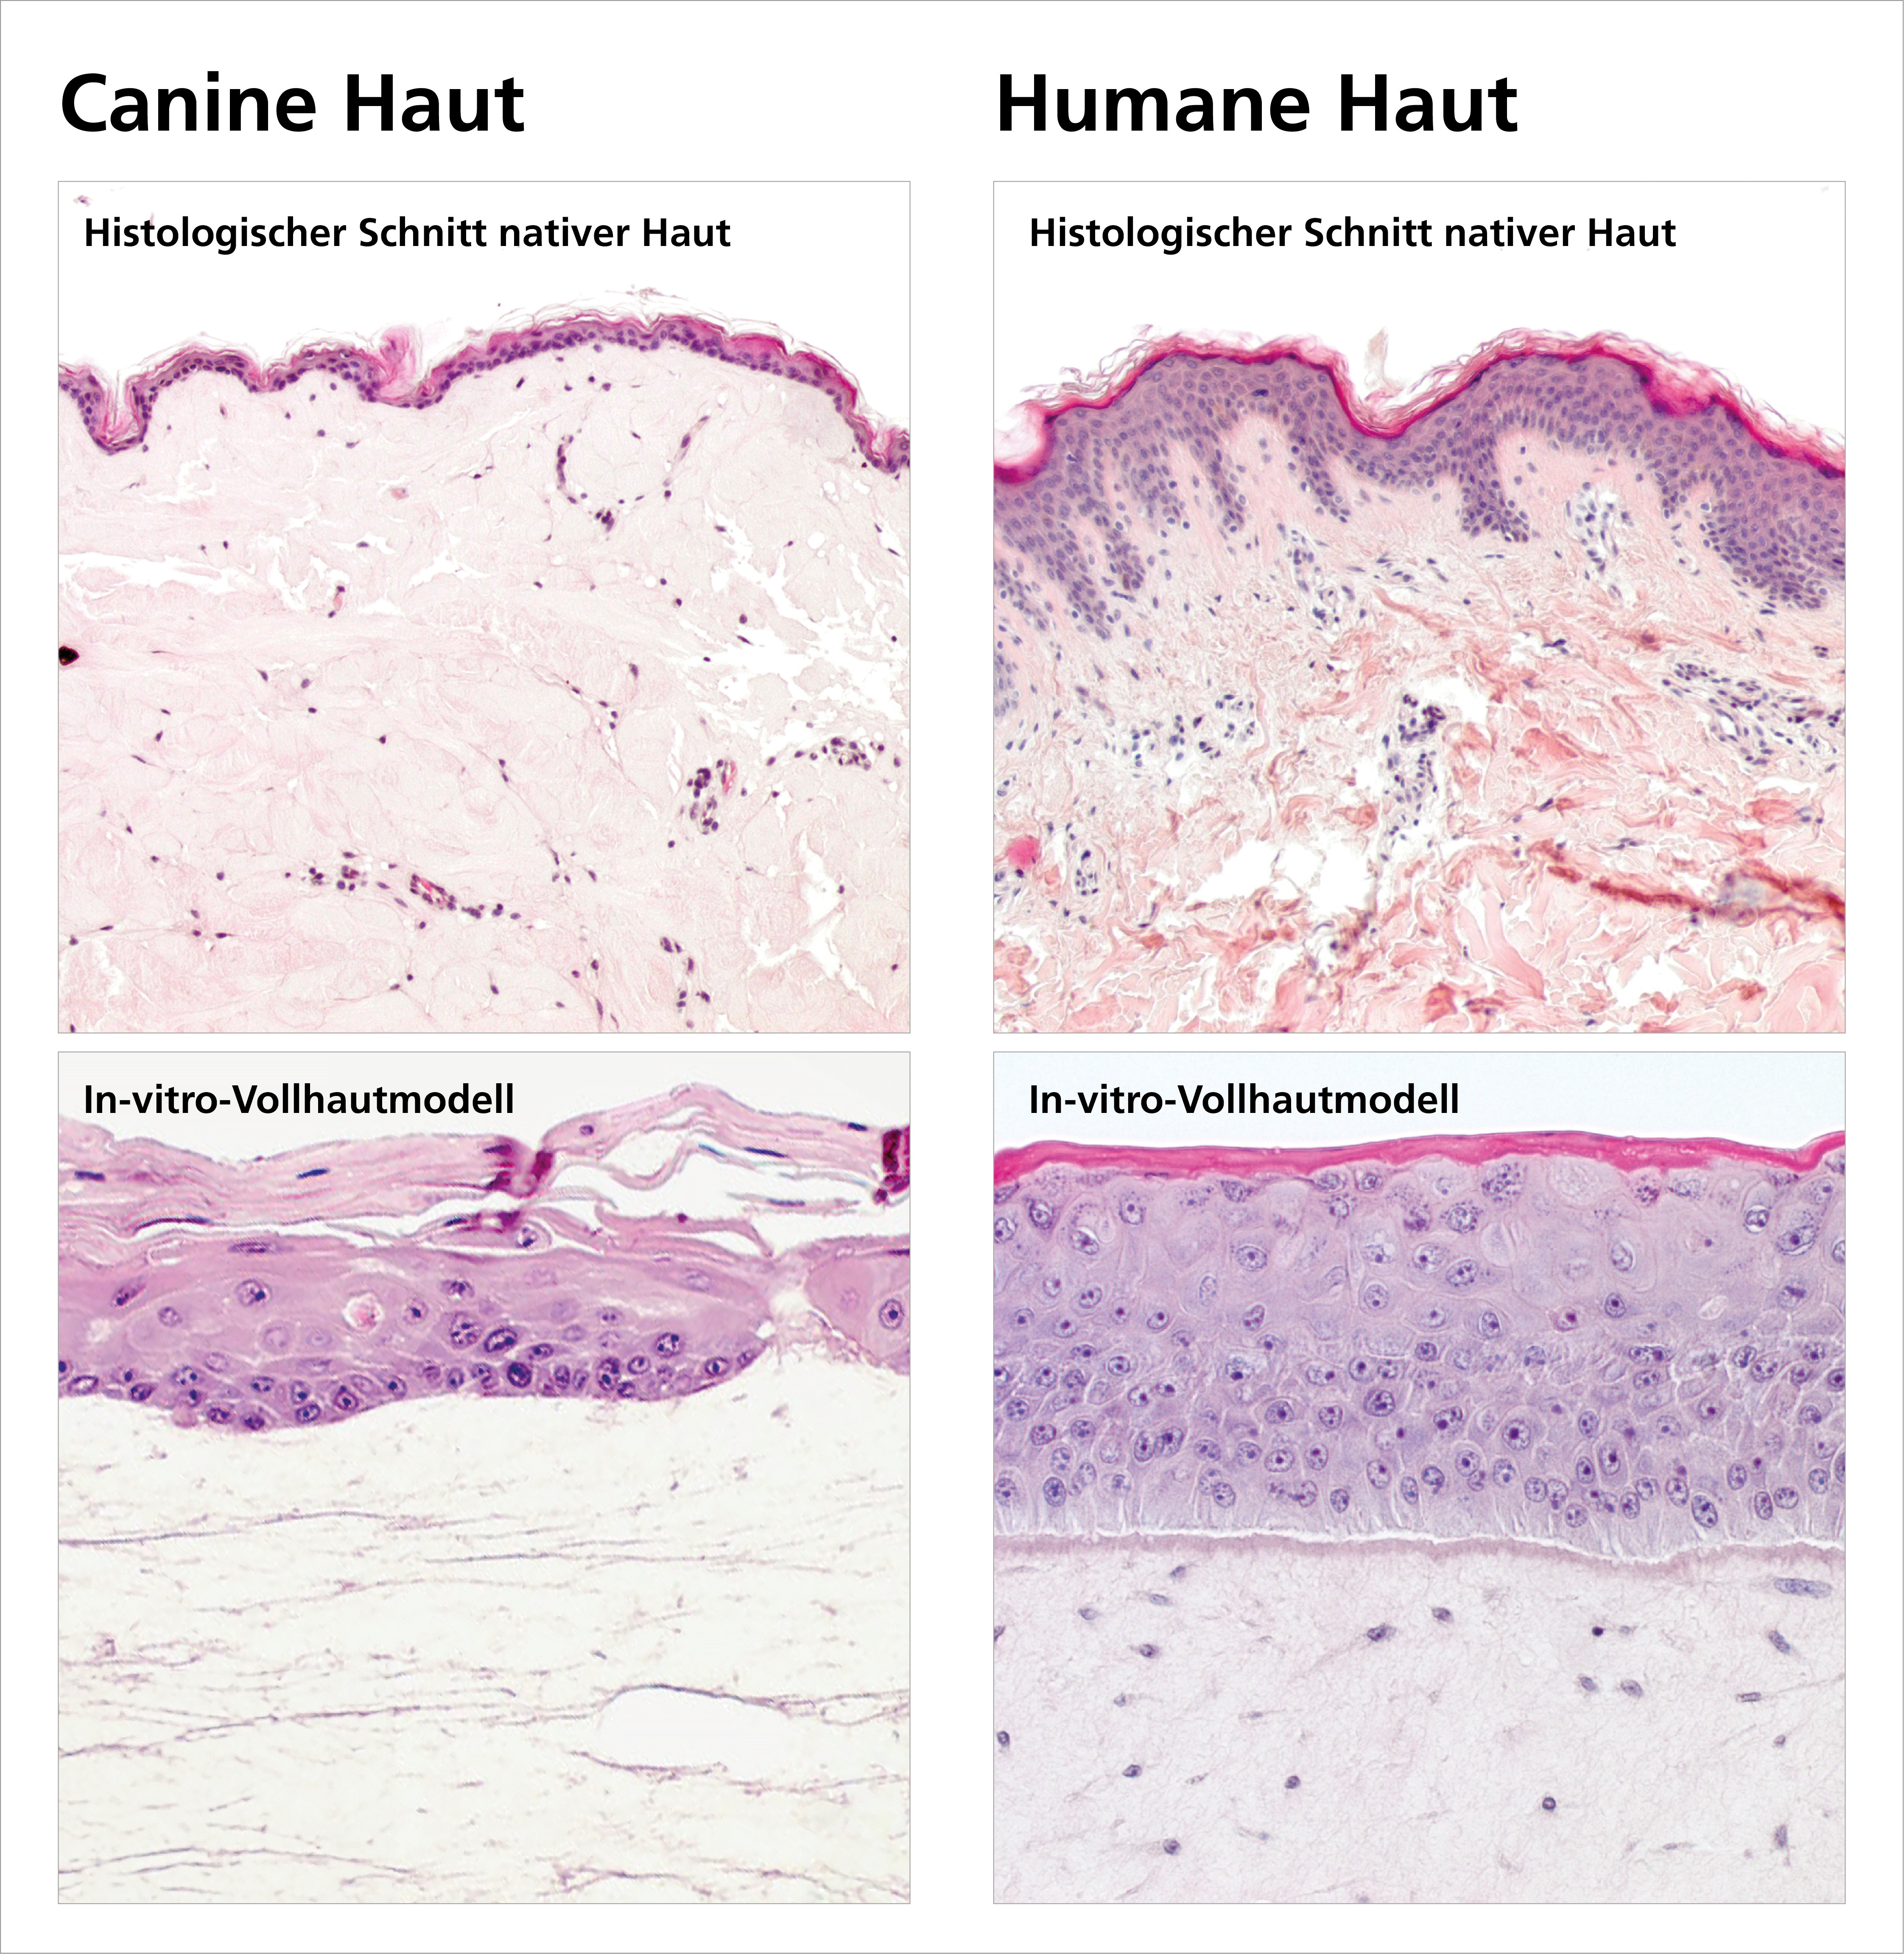 Histologische Schnitte von Hundehaut (oben links) und humaner Haut (oben rechts) zeigen, dass die Epidermis beim Hund dünner ist und kaum verhornt. Die Mikroskopaufnahmen in vitro kultivierter Hautäquivalente (unten) zeigen, dass die Hundehaut aus dem Labor (unten links) vom Original morphologisch praktisch nicht zu unterscheiden ist.